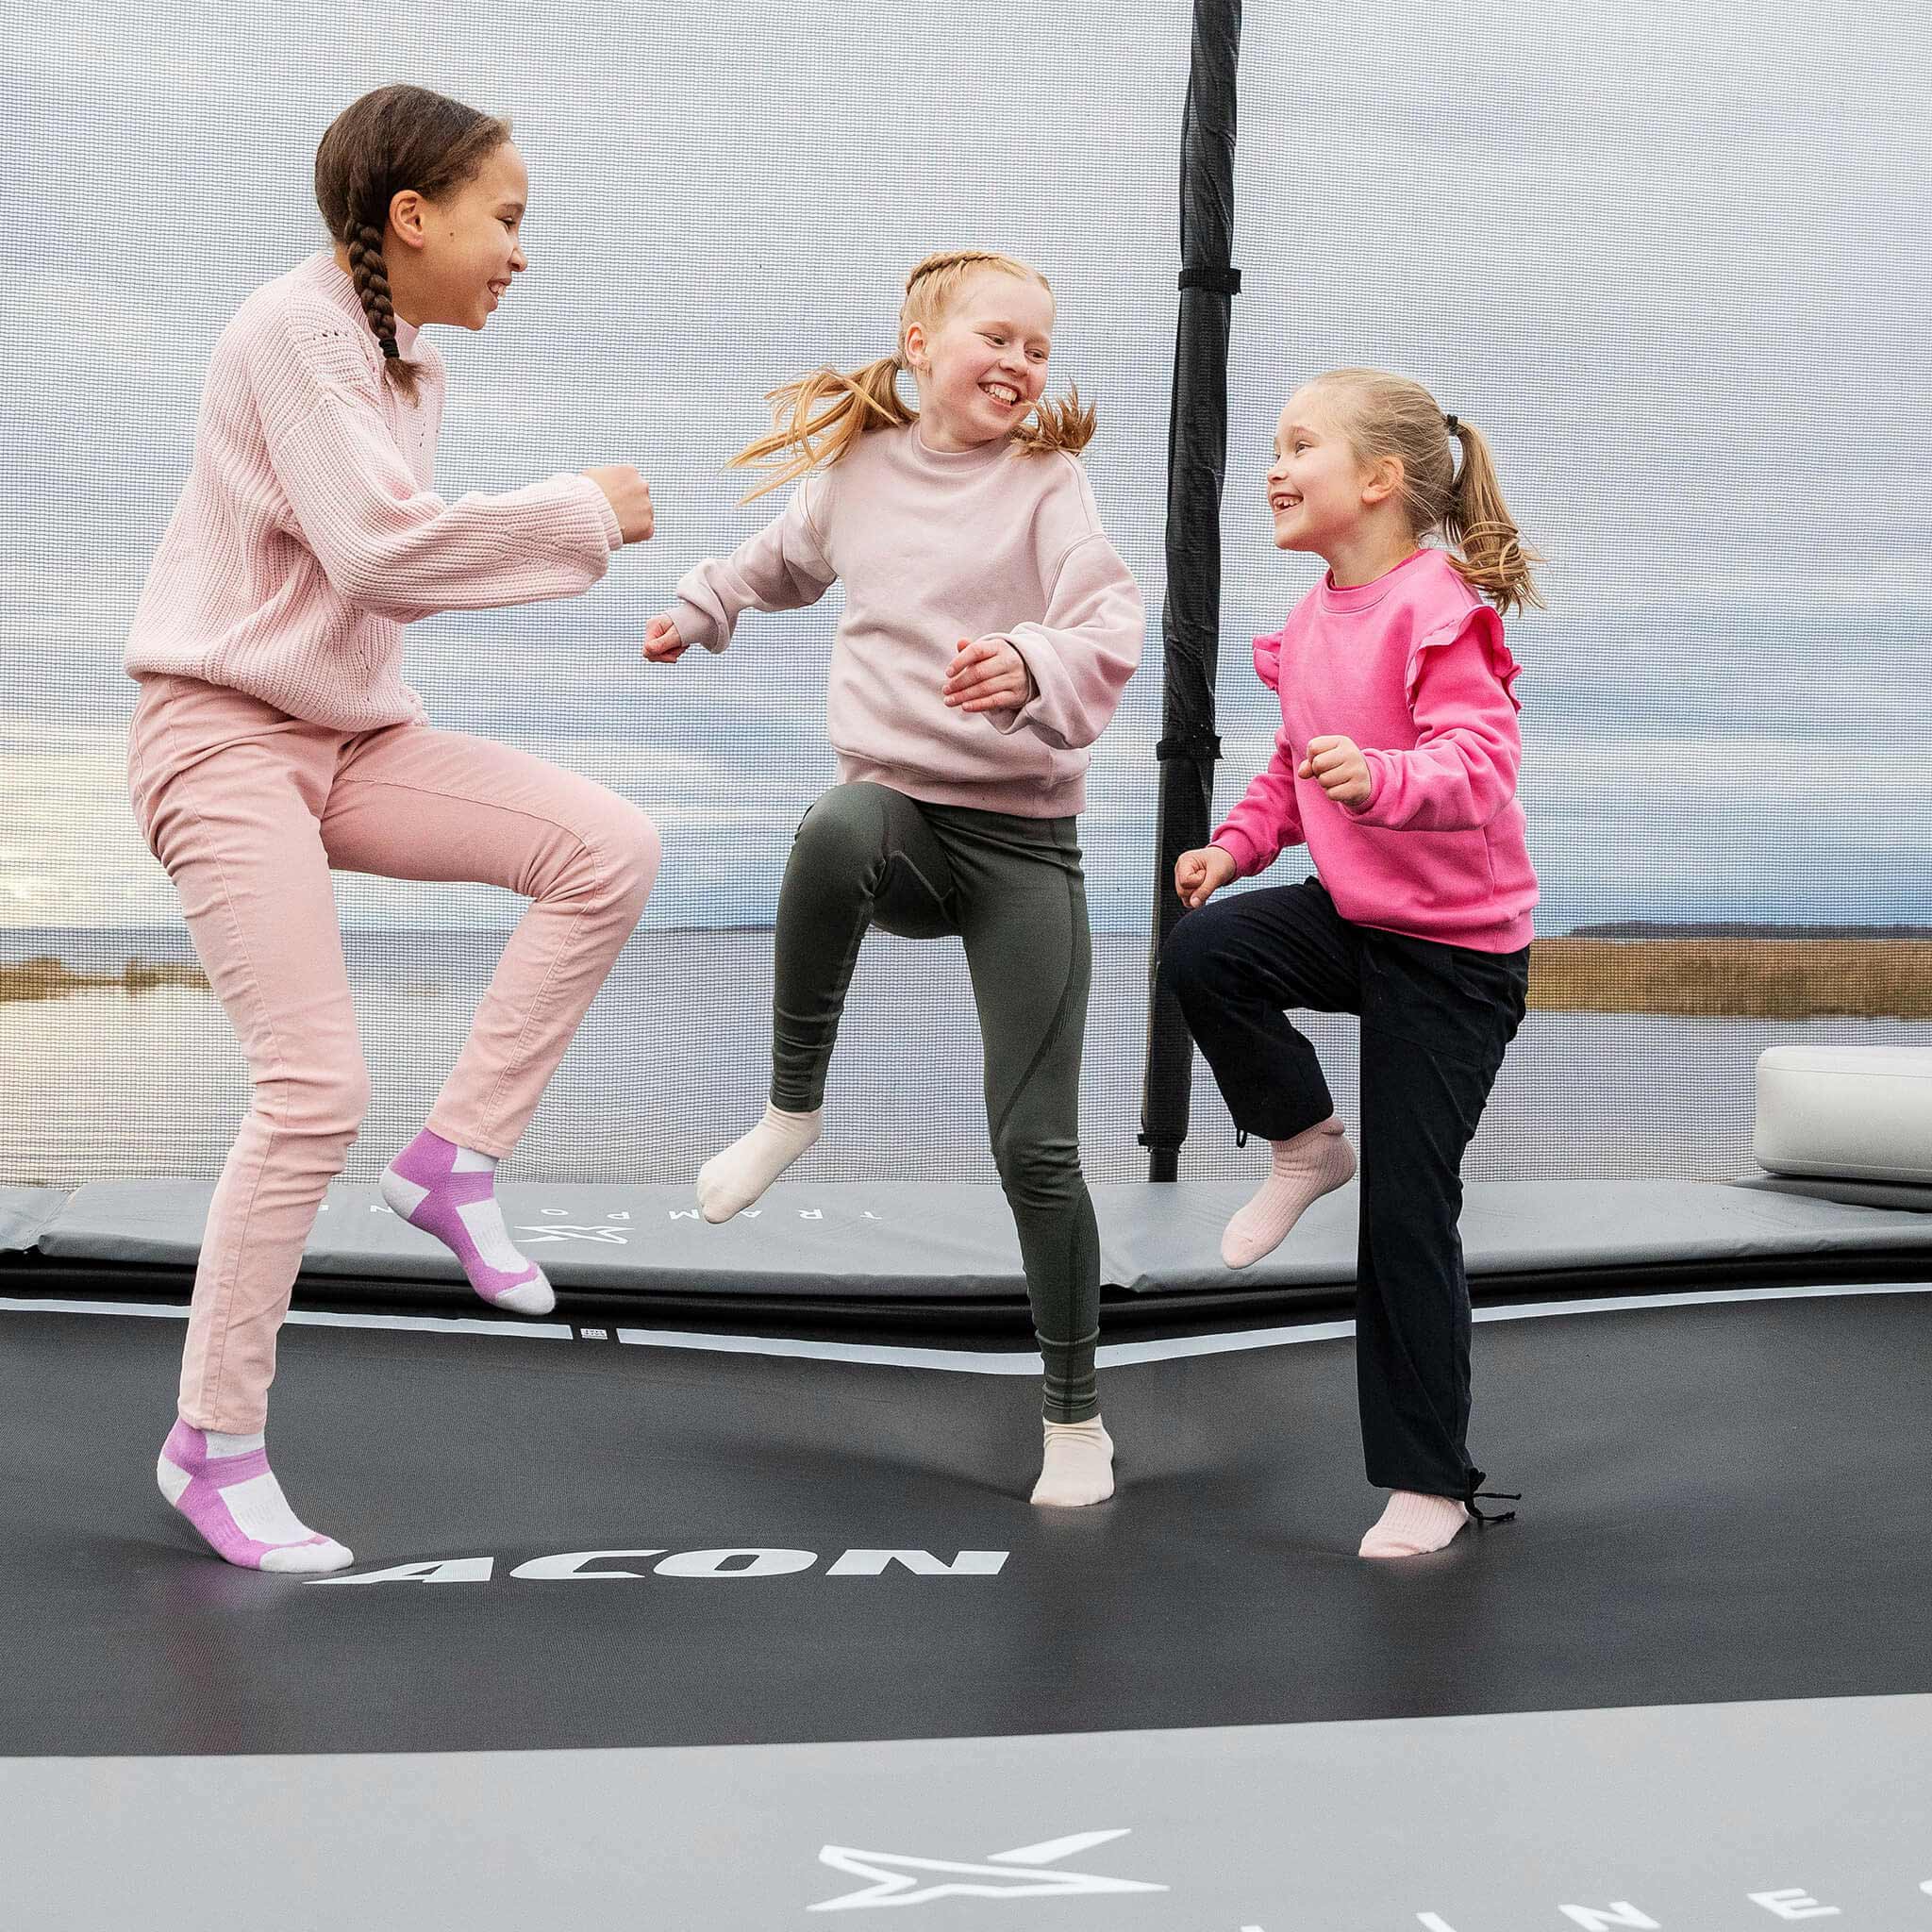 Kolme iloista tyttöä vaaleanpunaisissa paidoissa astelee Acon X -trampoliinilla.